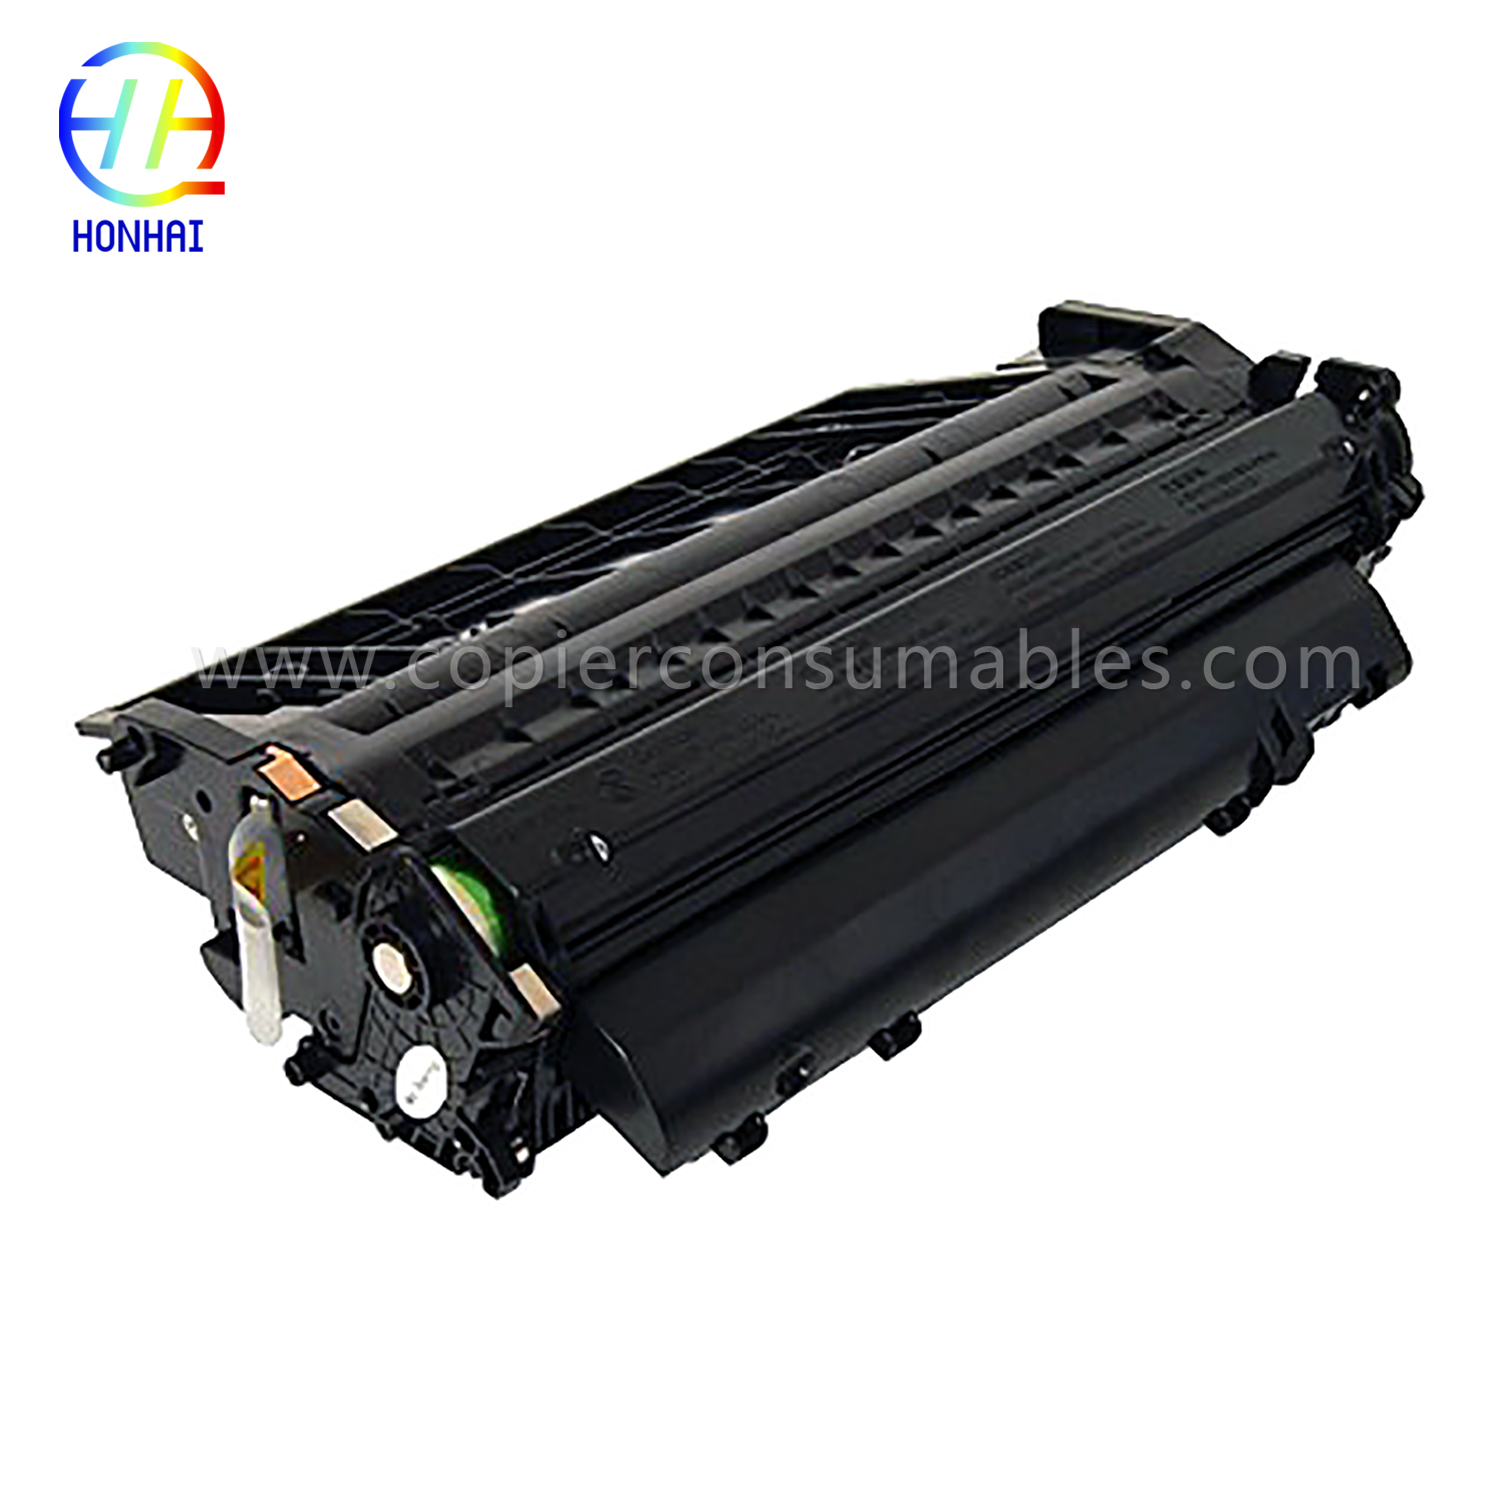 Toner Kartuşu HP LaserJet Pro 400 M401 MFP M425 (CF280X) 13,2x4,3x8,3 (2) 拷贝